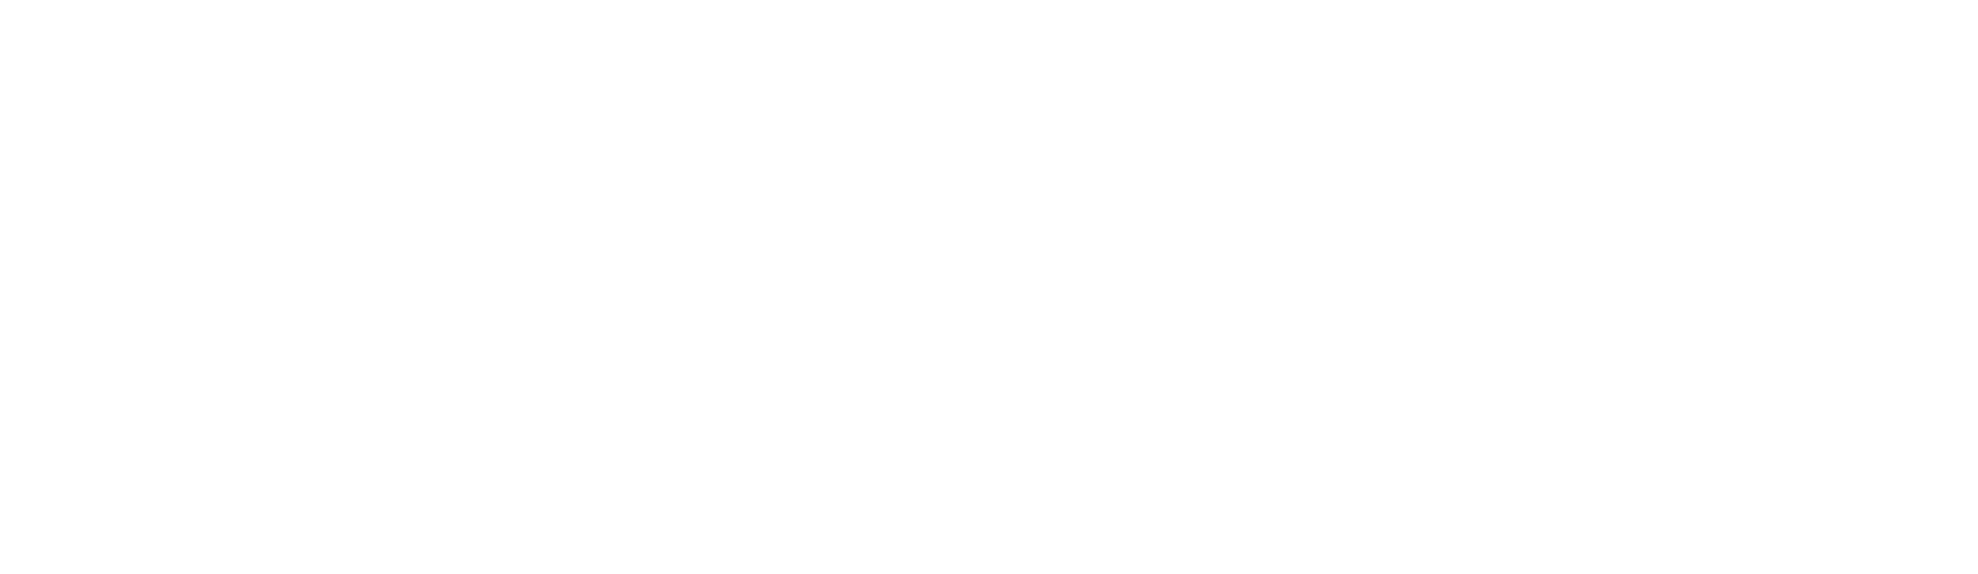 Logo_SteelNet_FINAL